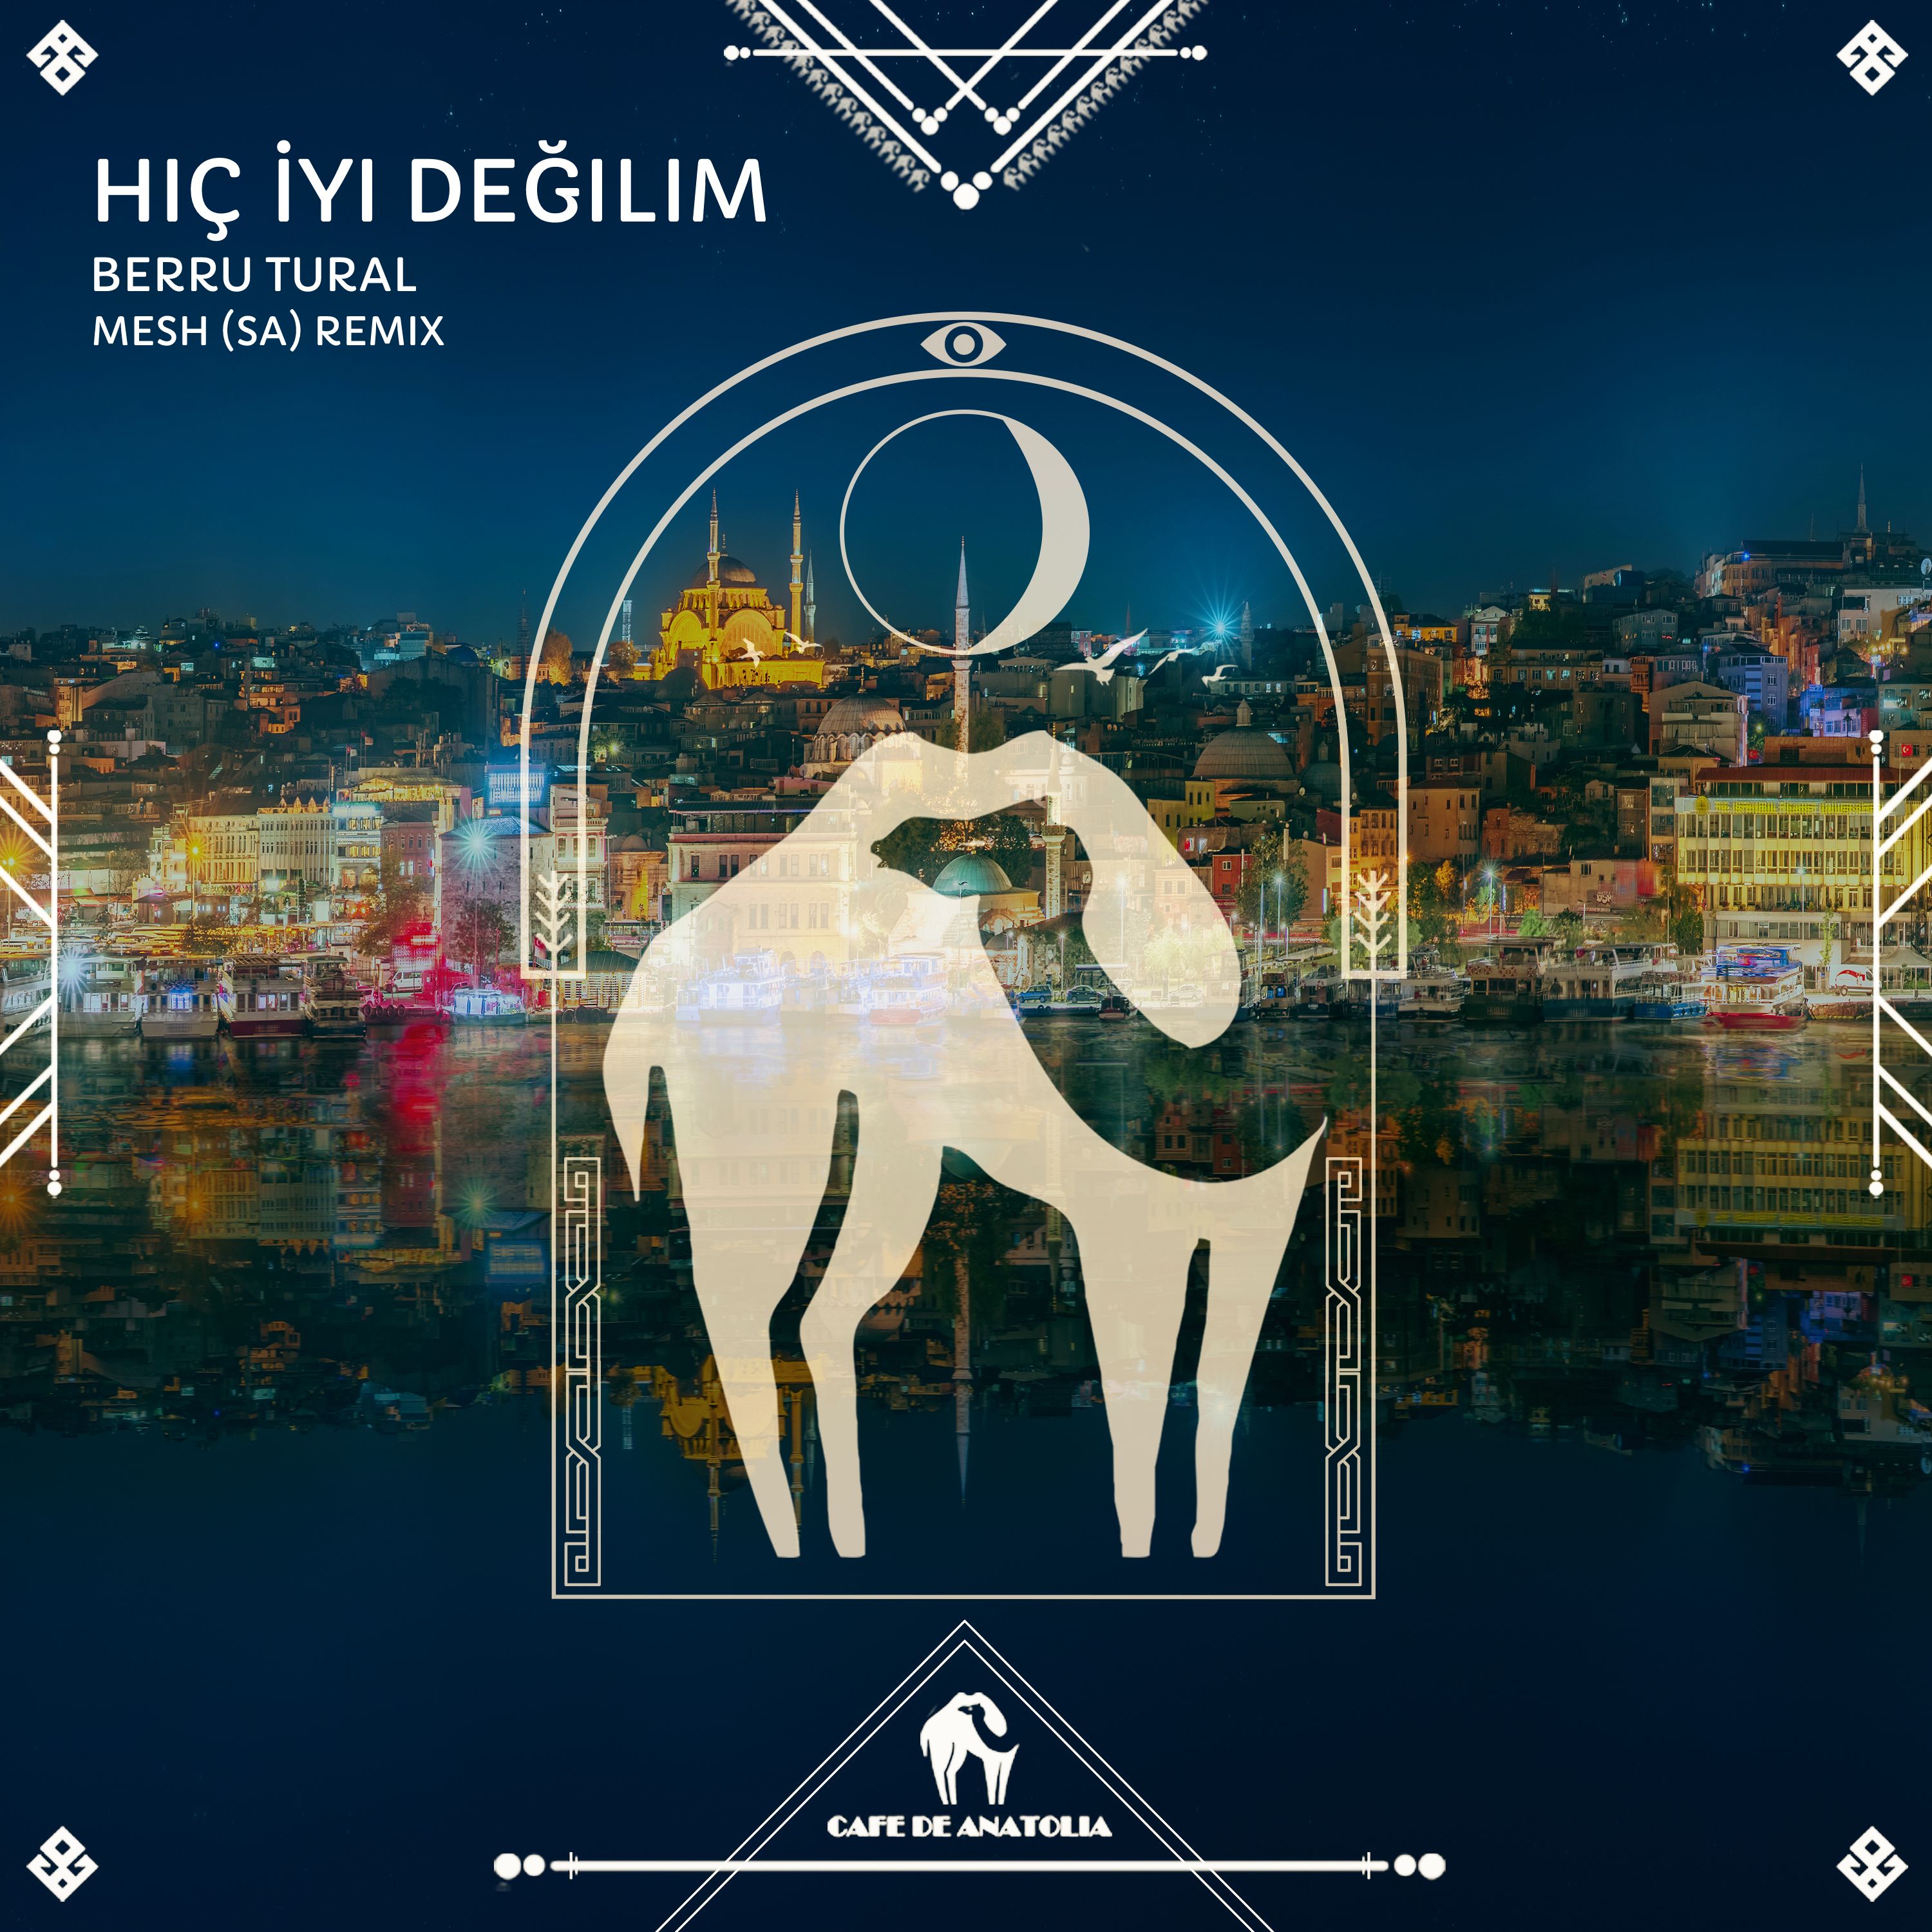 Berru Tural - Hiç İyi Değilim (MESH SA Remix) [Cafe De Anatolia]